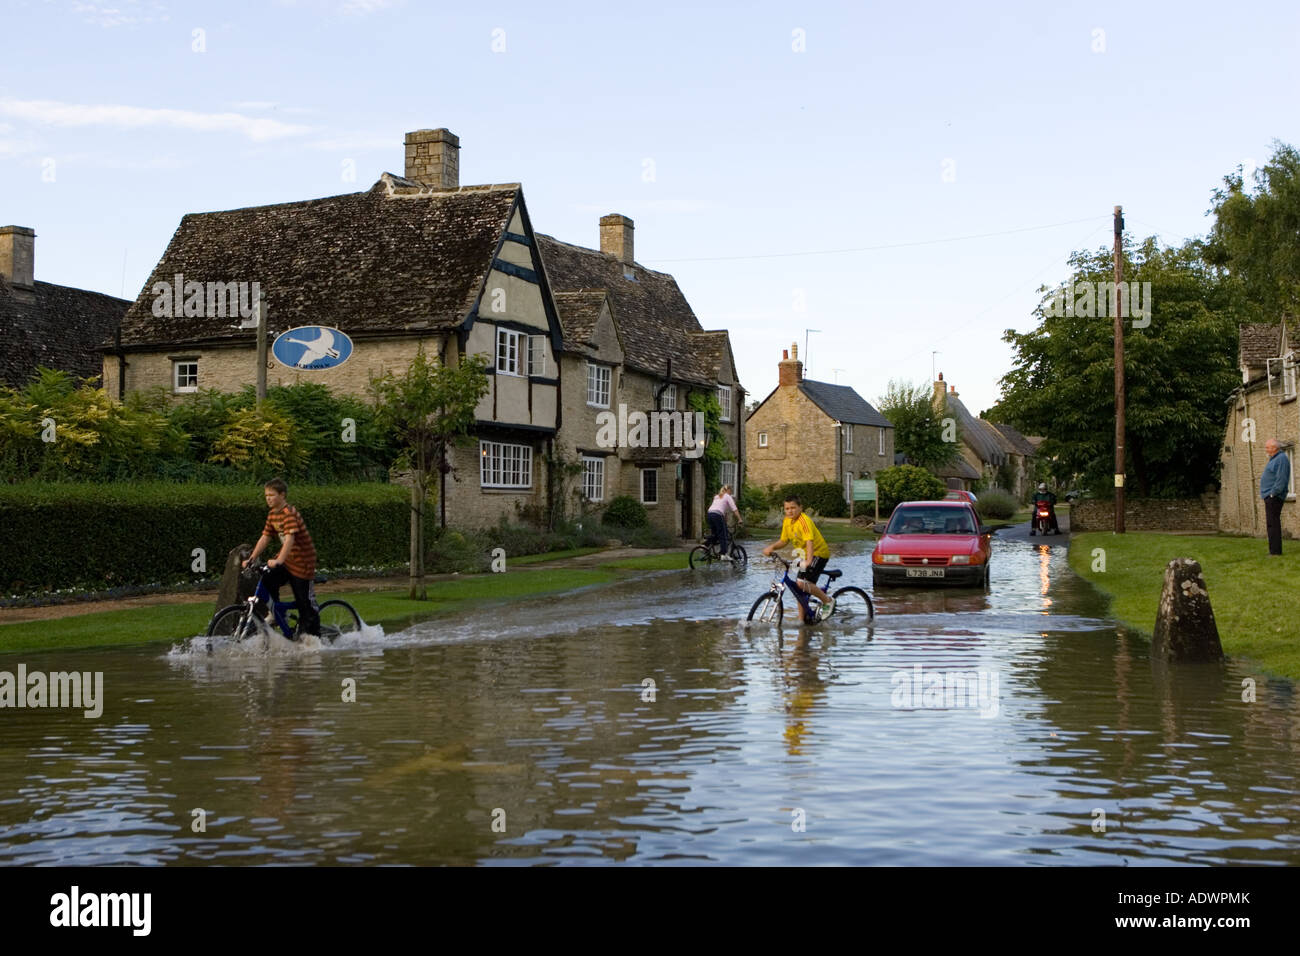 Kinder fahren mit ihren Rädern durch Hochwasser in Minster Lovell Cotswolds Oxfordshire England Großbritannien Stockfoto